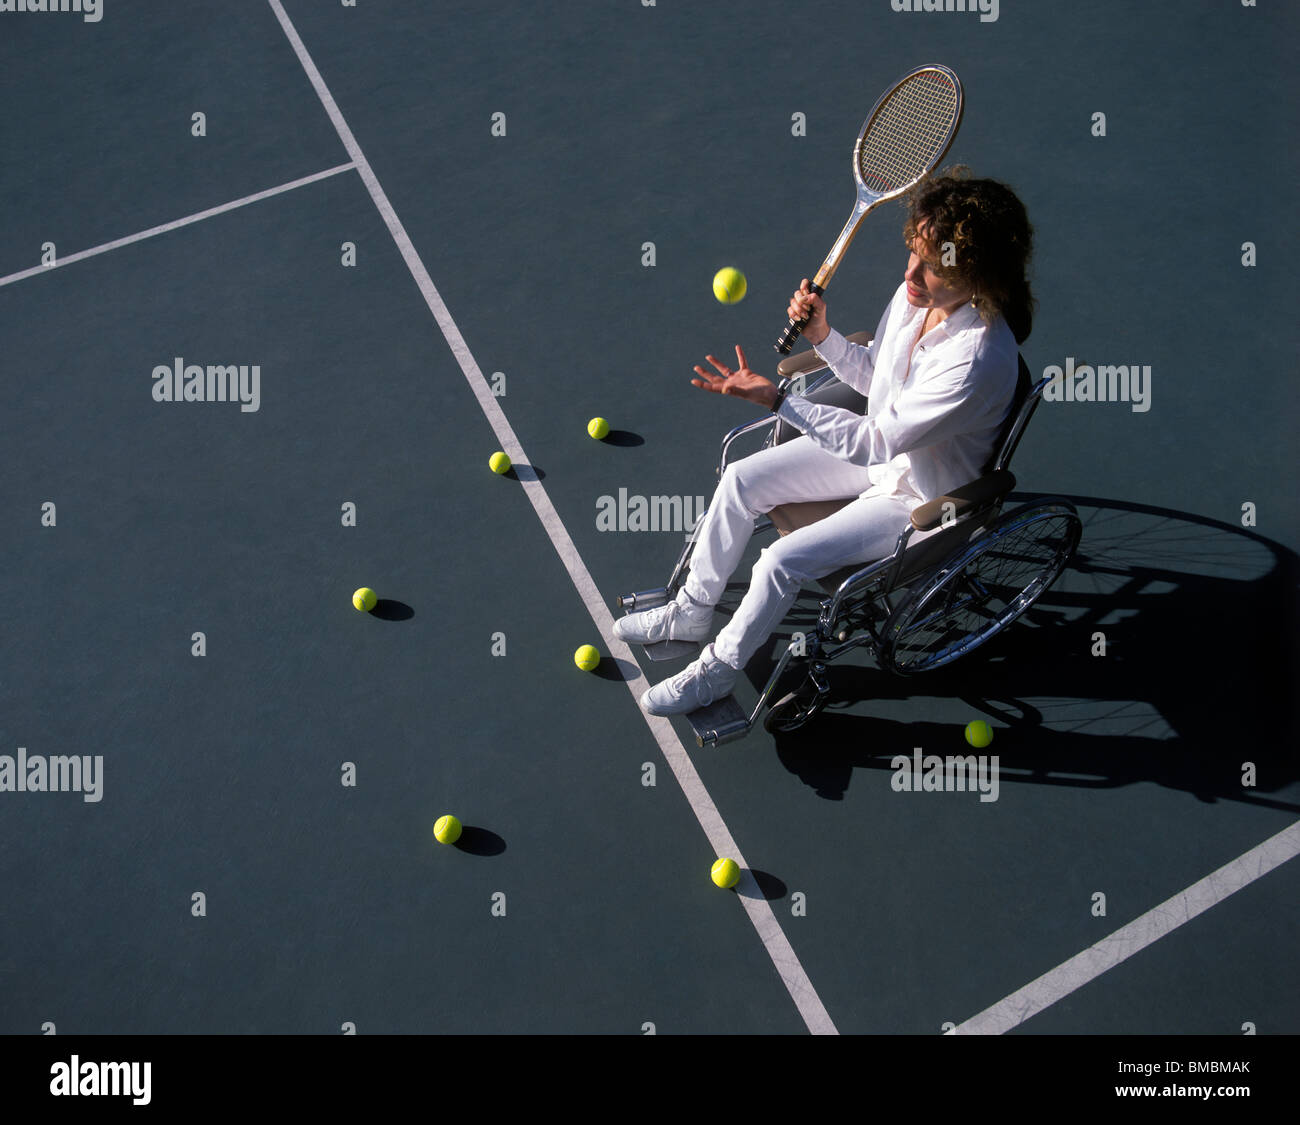 Femme sur un court de tennis en fauteuil roulant Banque D'Images